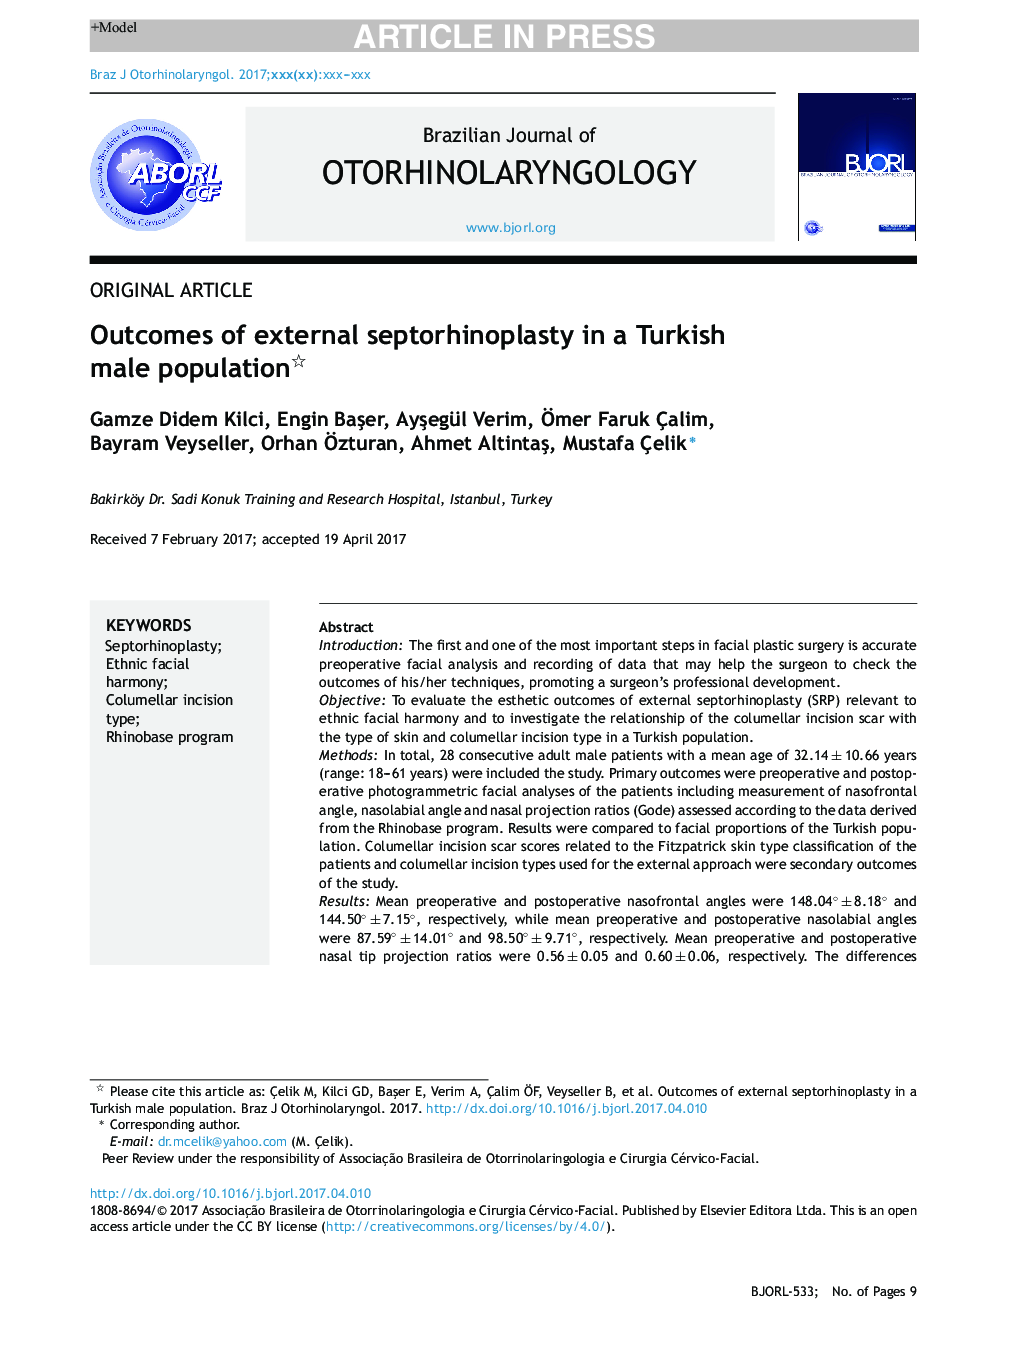 نتایج سپتیشرپلاستی خارجی در یک مرد ترکیه 